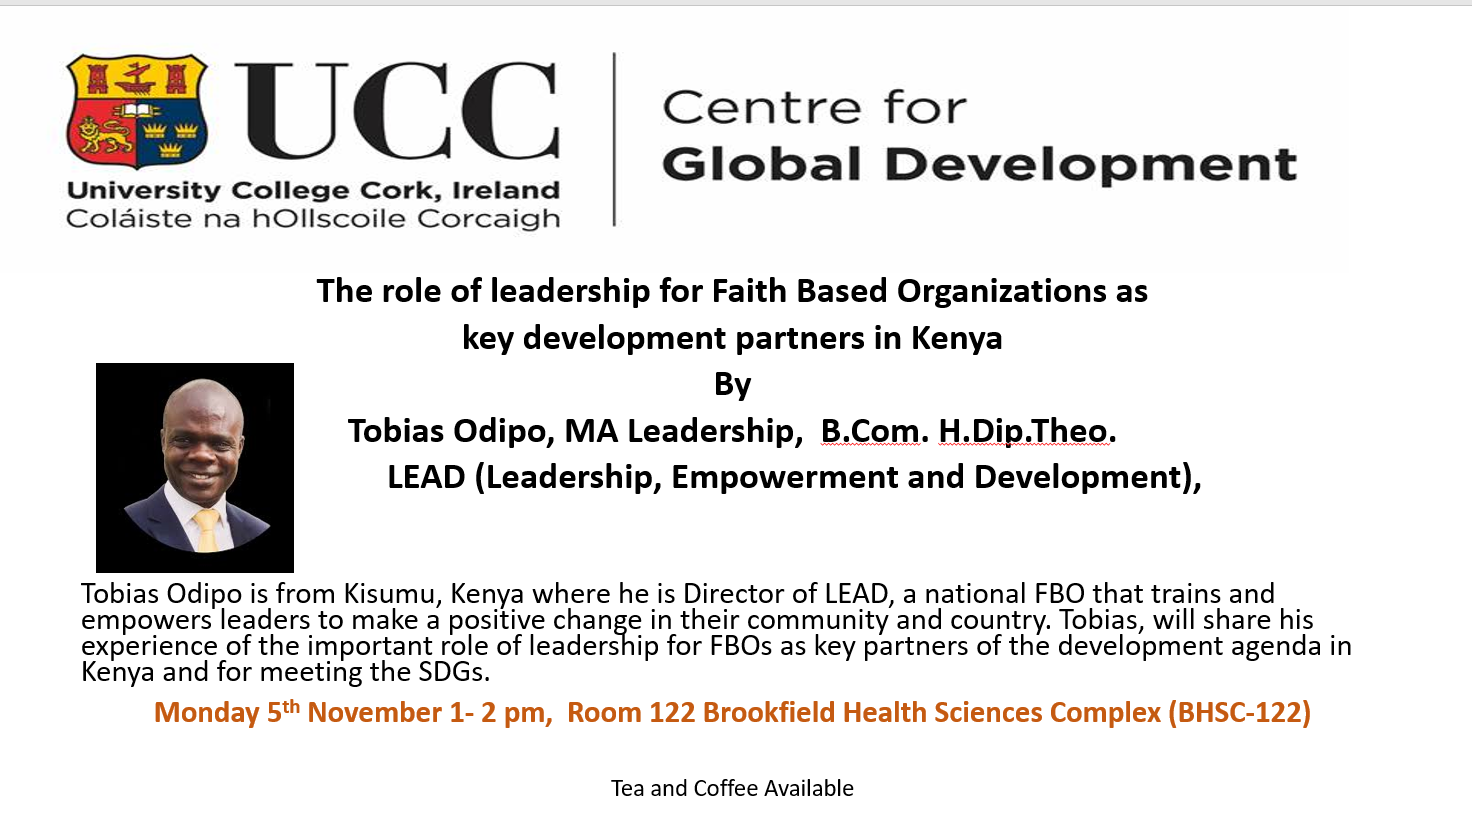 UCC Centre for Global Development - November 5th - Seminar on Leadership 